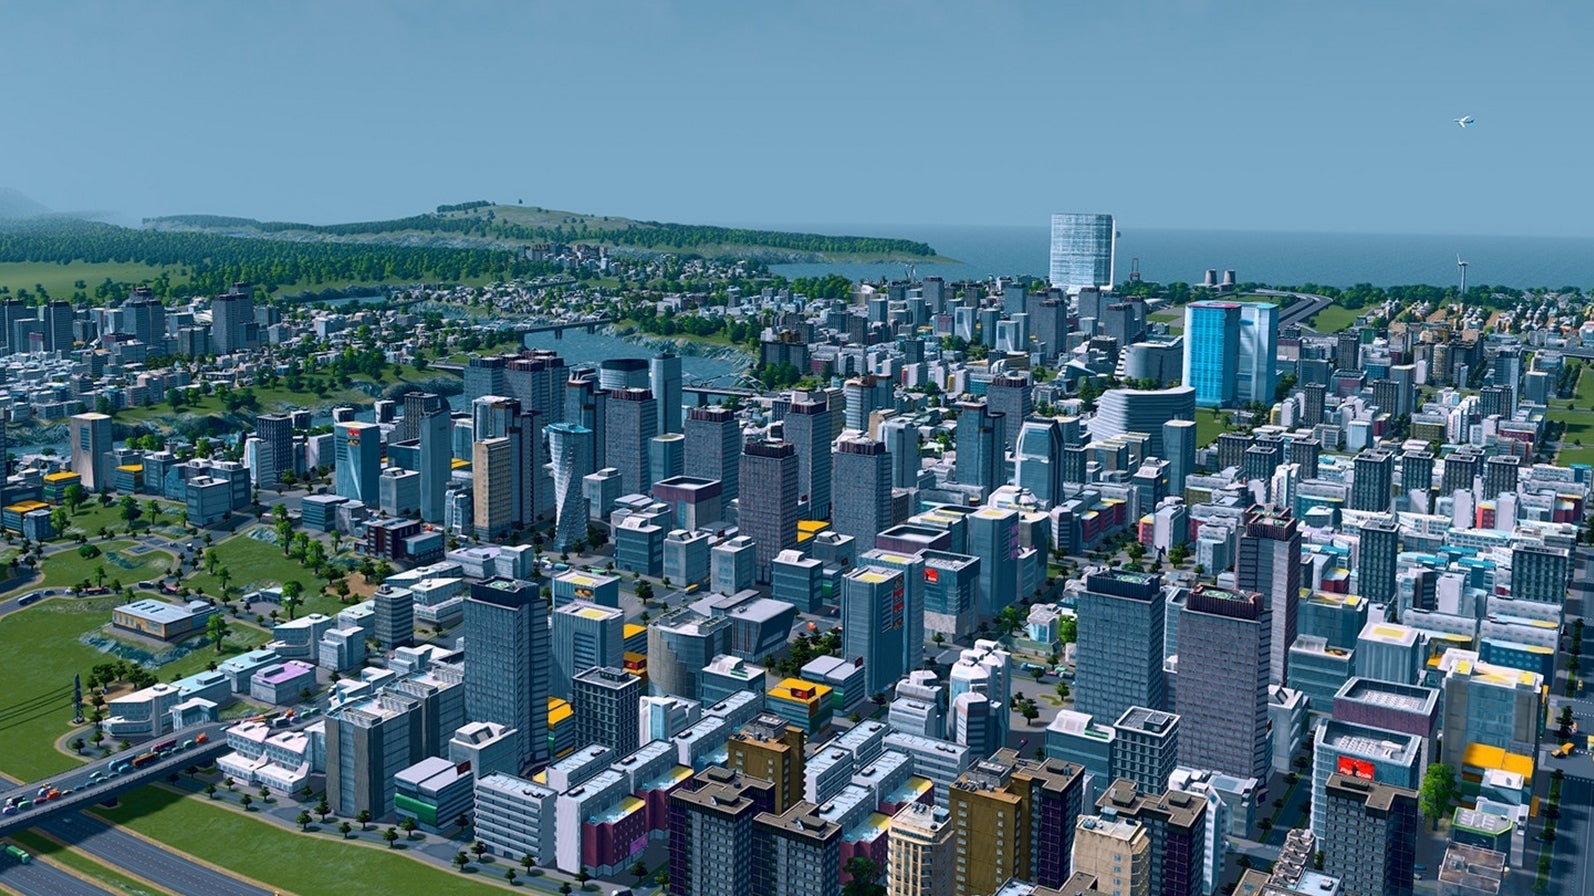 Bilder zu Spielt Cities Skylines kostenlos an diesem Wochenende